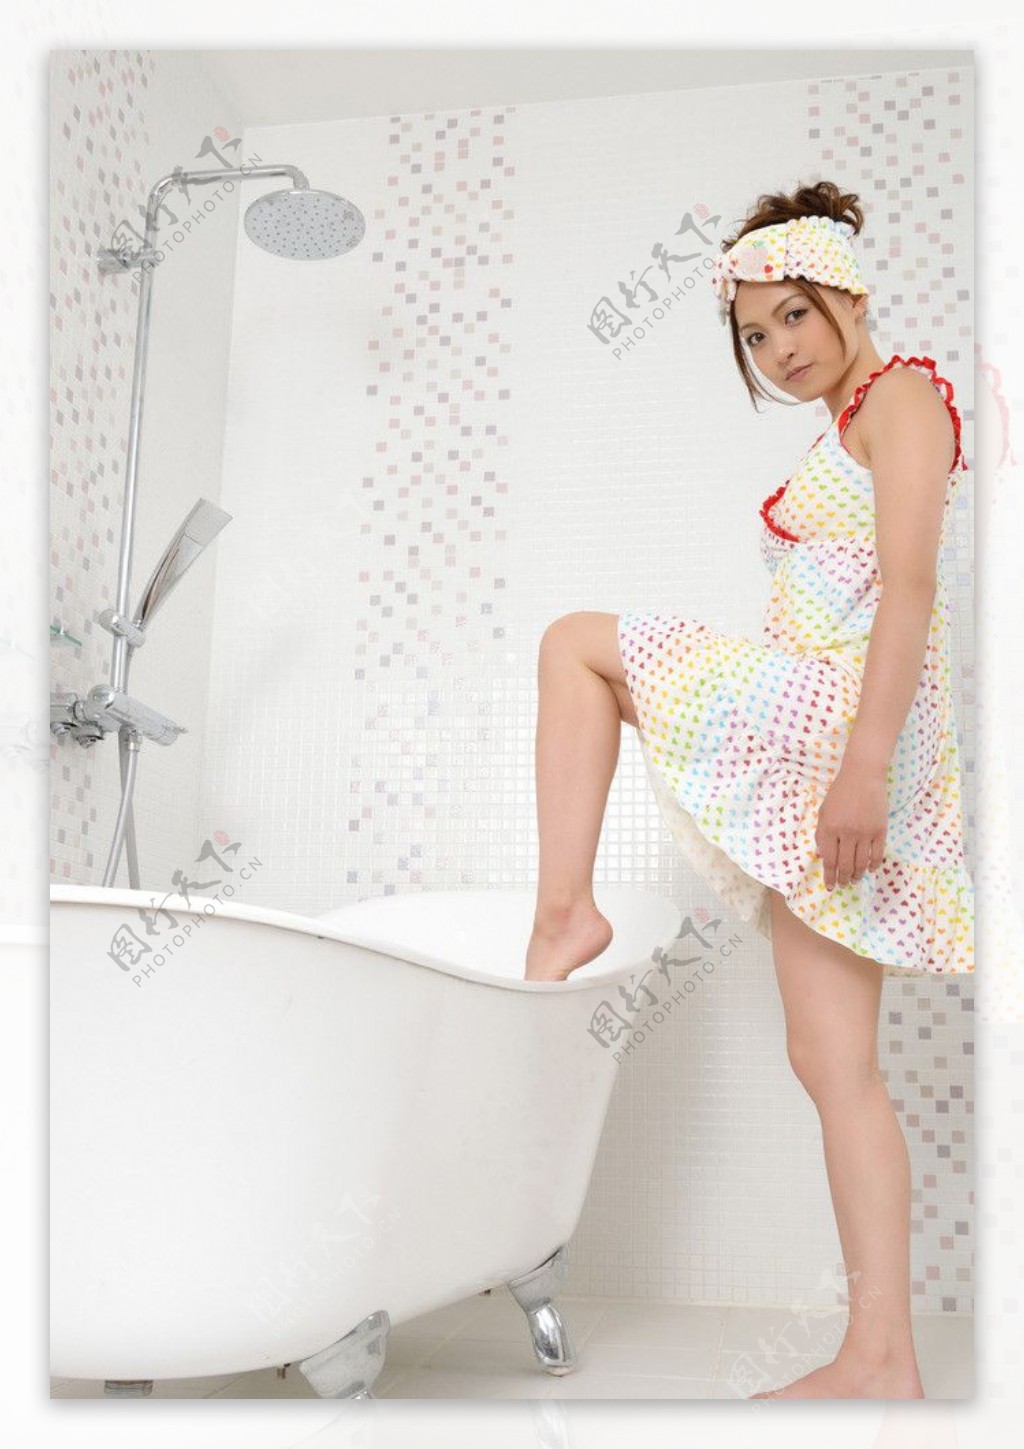 克拉女神江琴 长发 美腿 好身材 浴缸 4k美女壁纸_图片编号328579-壁纸网